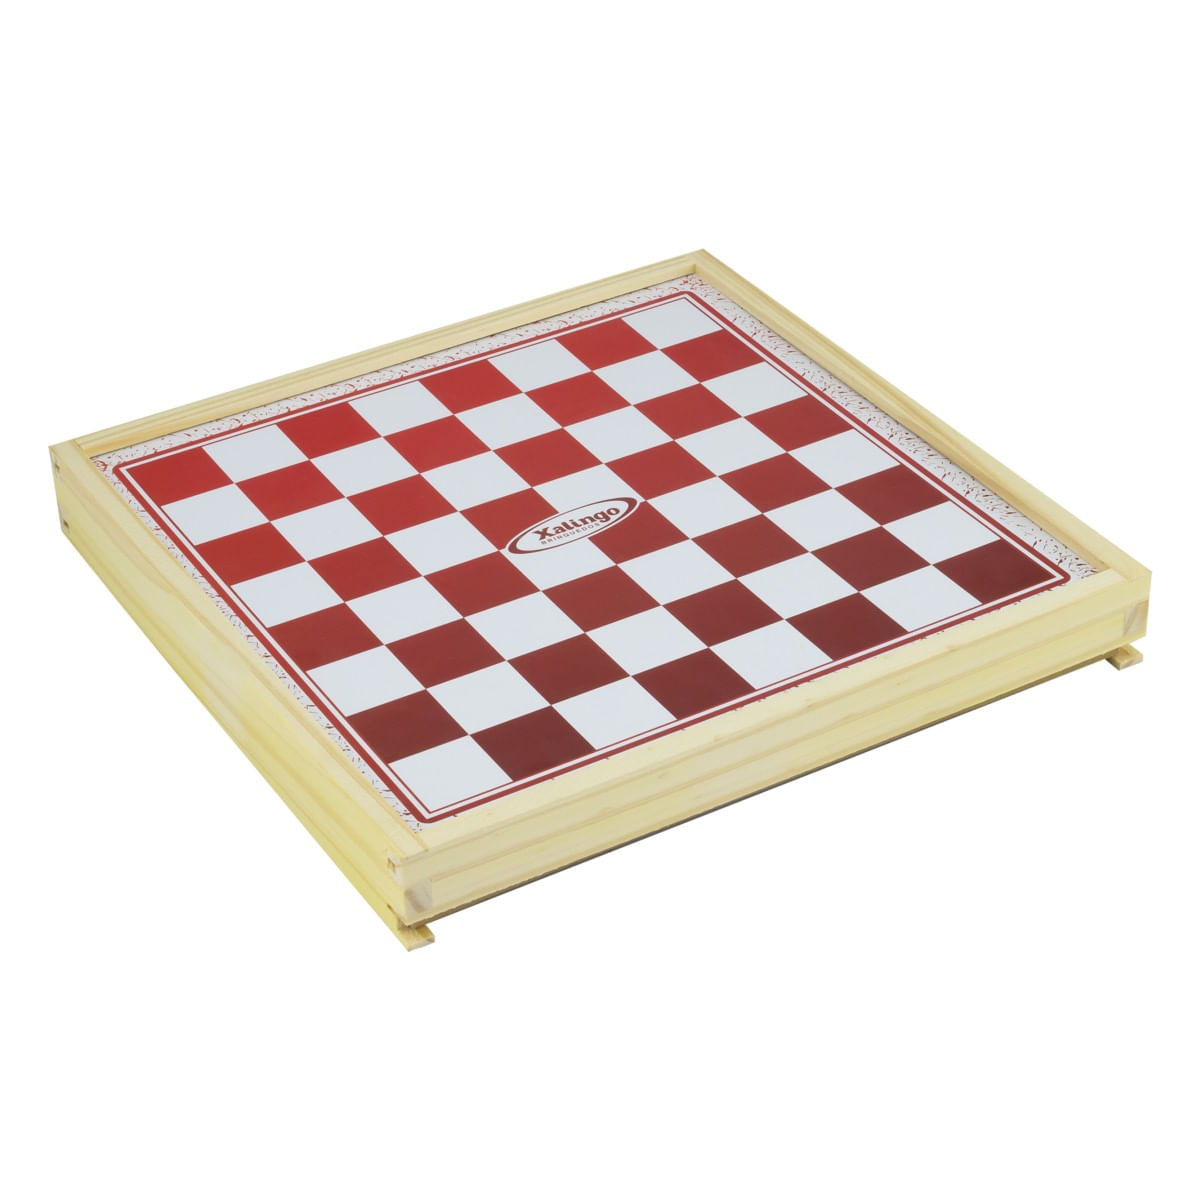 Dani Presentes - Jogo caixa em madeira DAMAS E LUDO XALINGO🎲 Os jogos  tradicionais de tabuleiro são ótimas ferramentas para desenvolver a  habilidade estratégica e o raciocínio das crianças. São jogos de